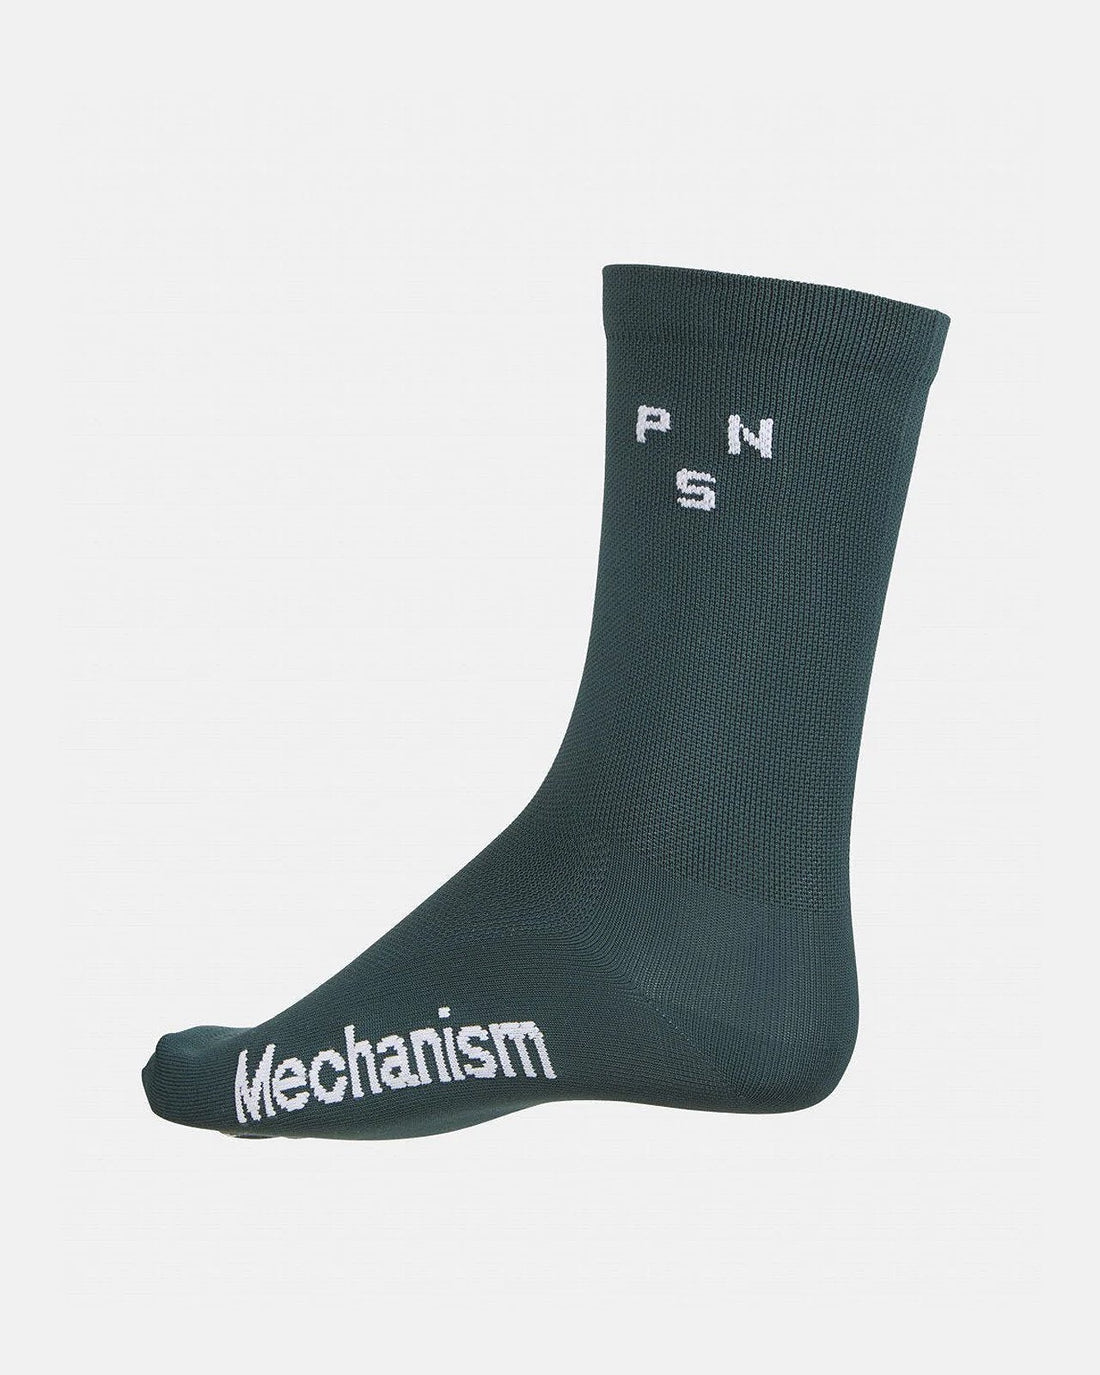 Mechanism Socks - Teal